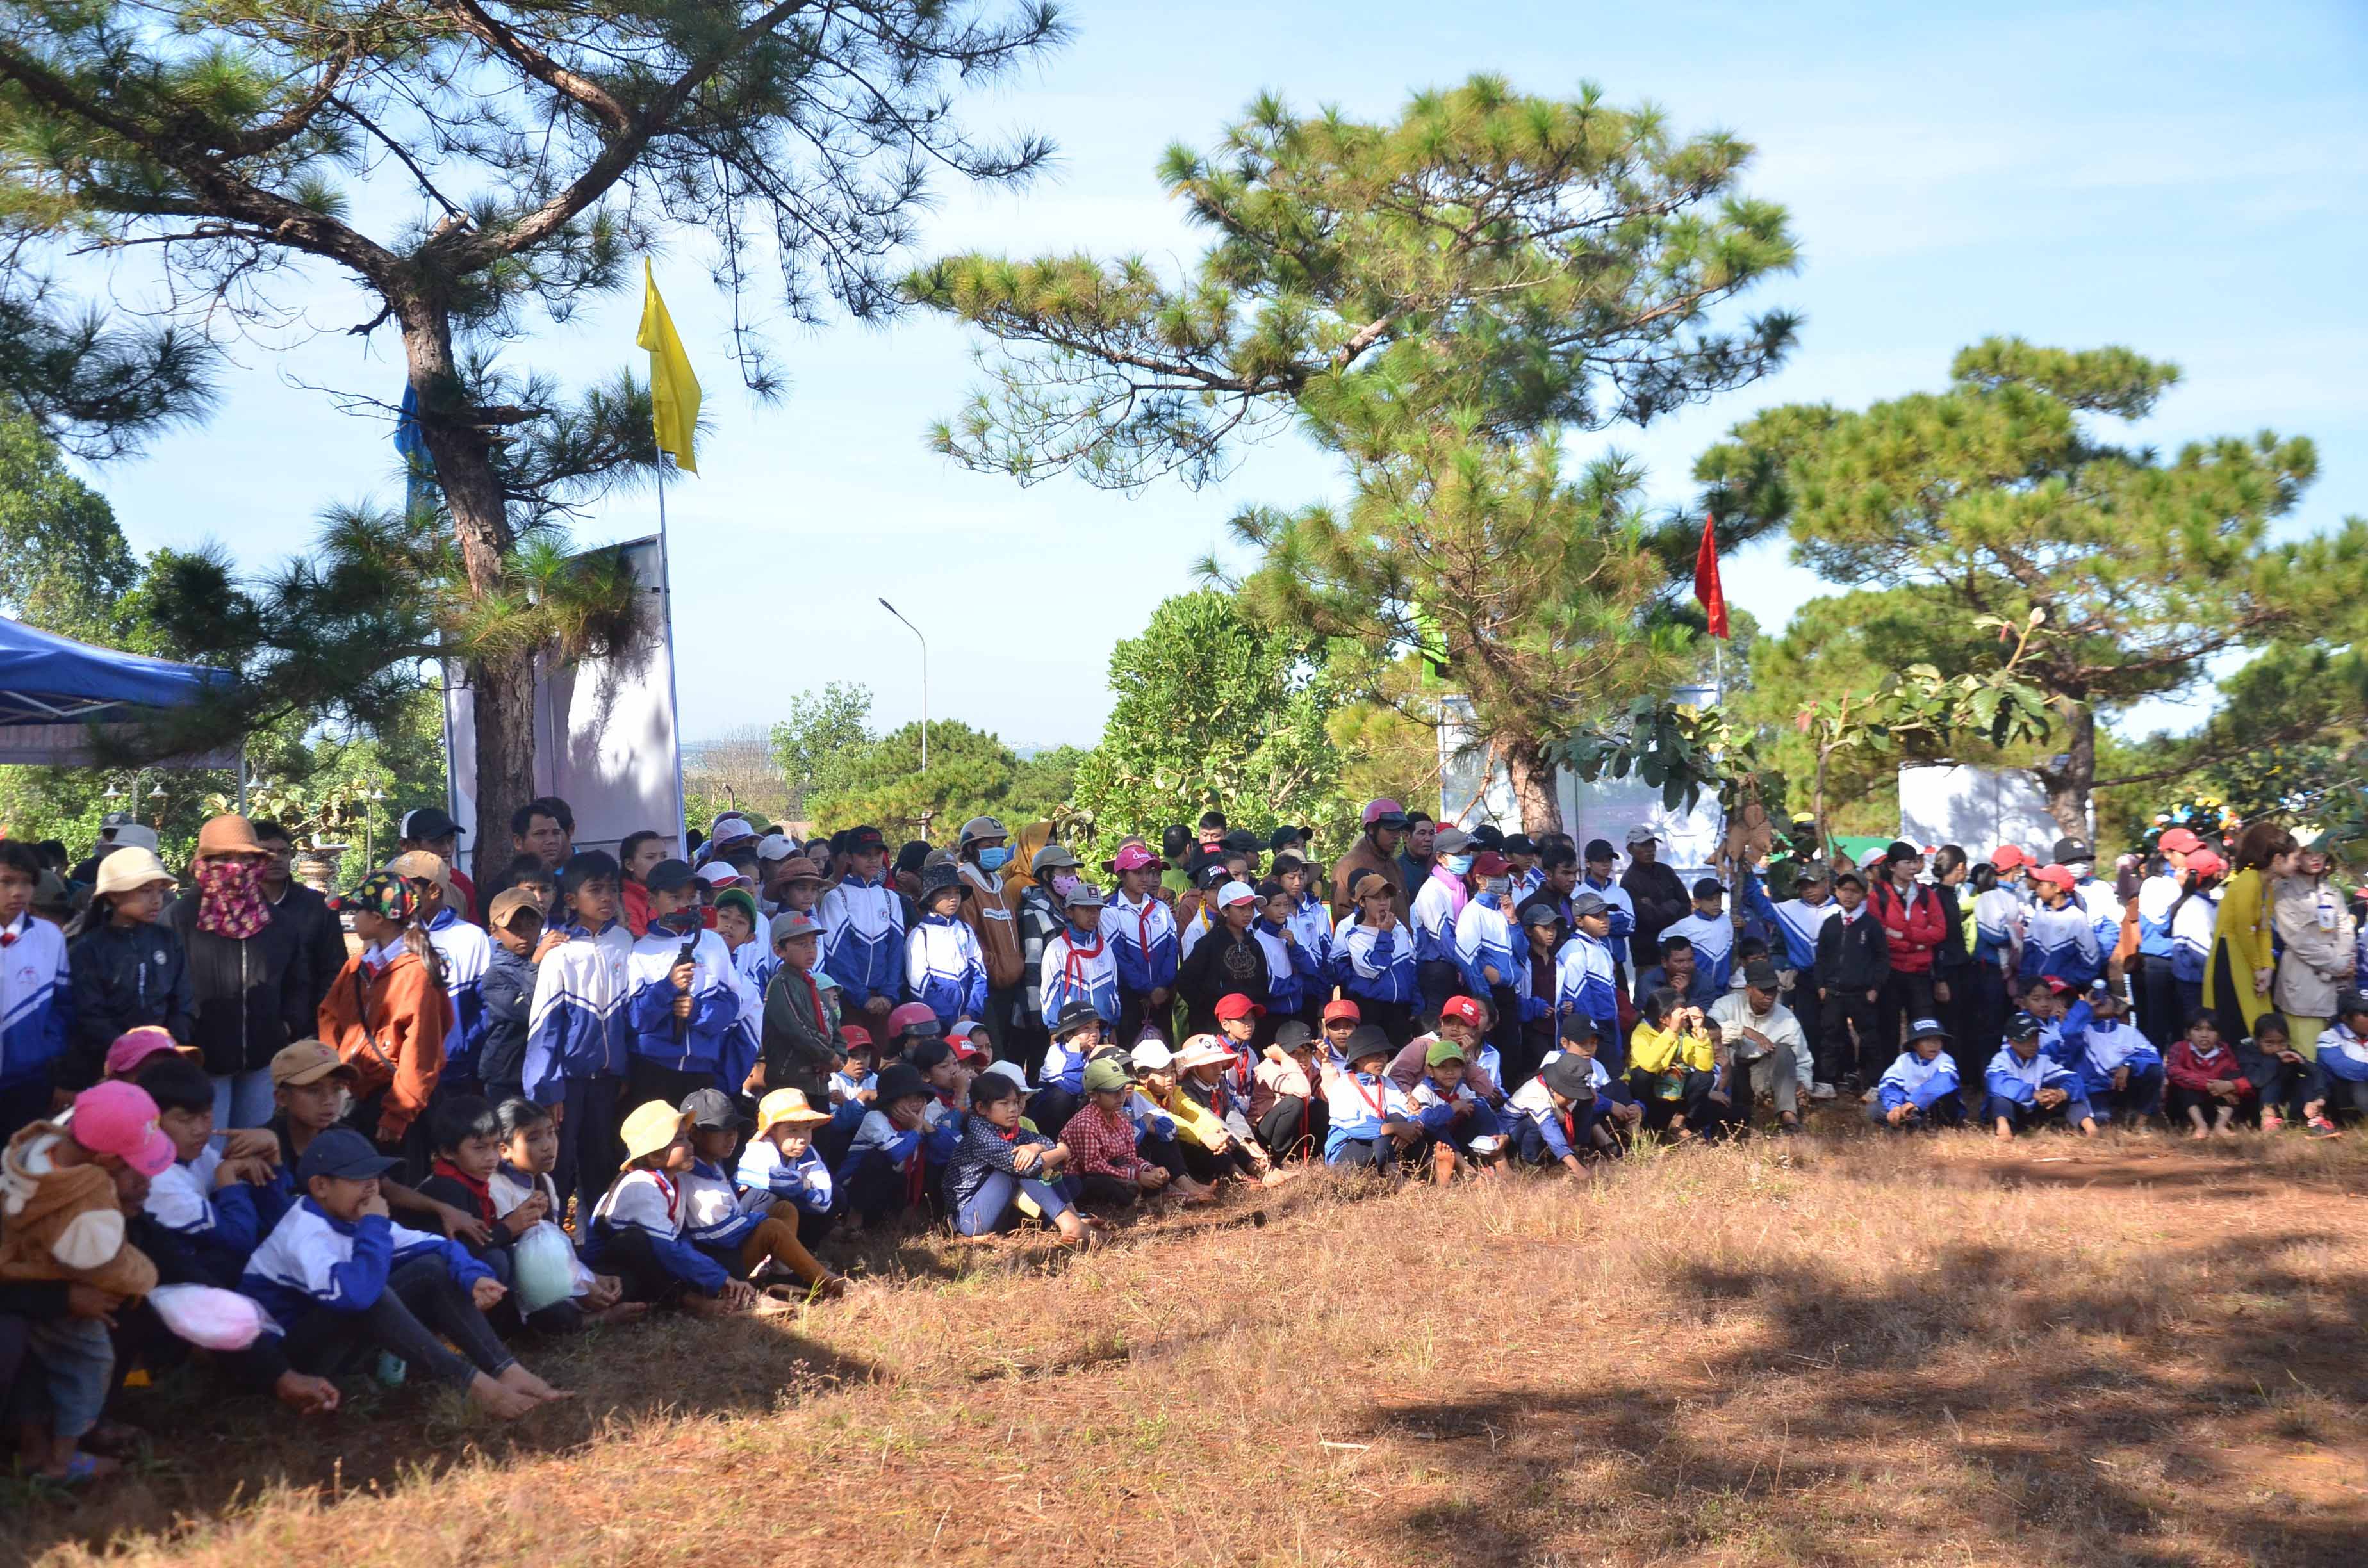 Đông đảo người dân và học sinh đến tham dự Lễ Khai mạc Ngày hội cỏ hồng.